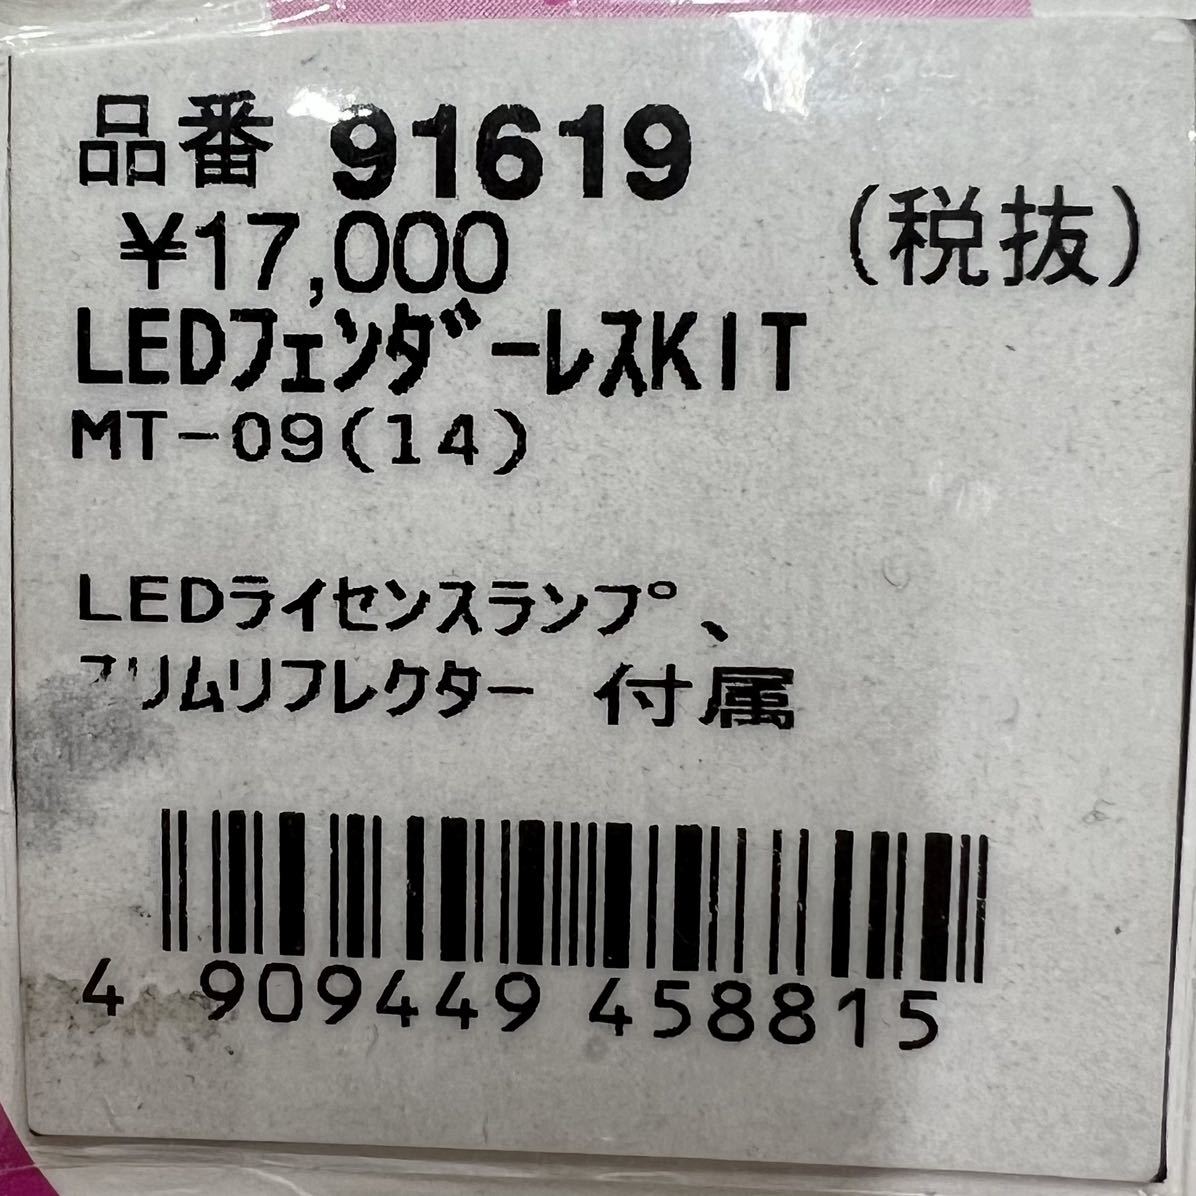 《展示品》 MT-09 ('14) デイトナ LED フェンダーレスキット (91619) _画像4